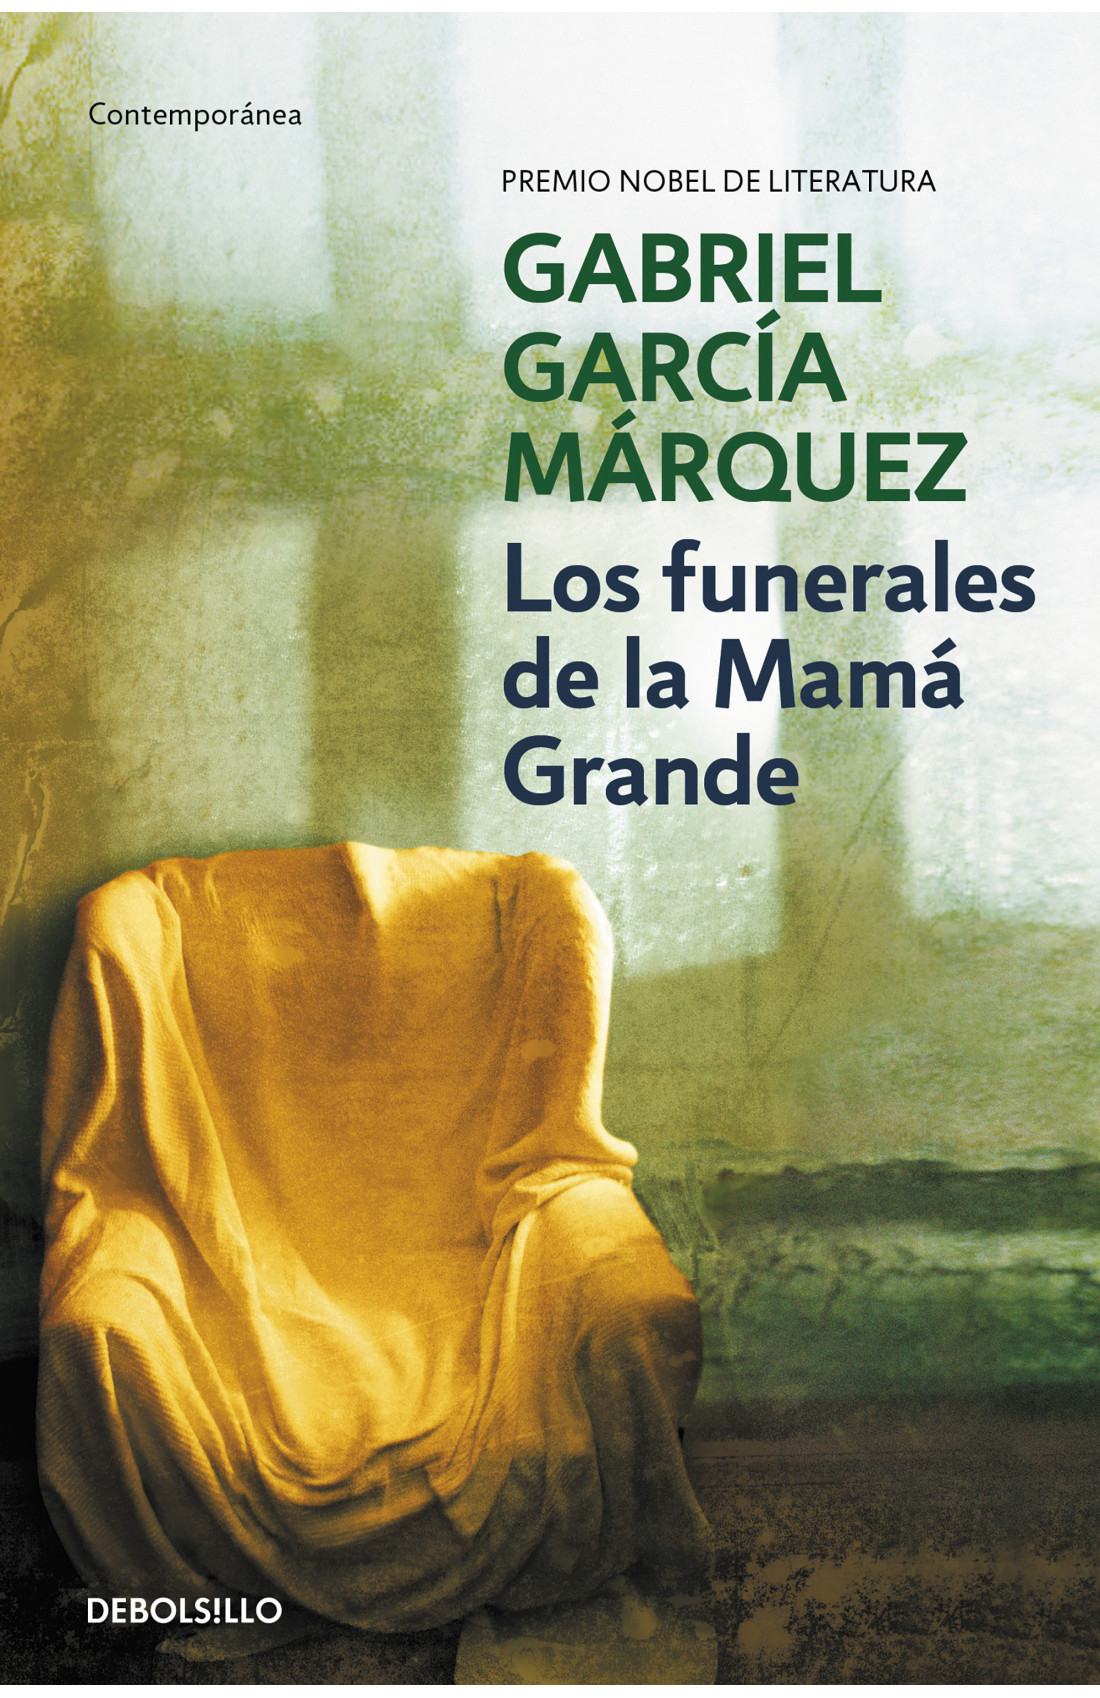 Zenda recomienda: Los funerales de la Mamá Grande, de Gabriel García Márquez